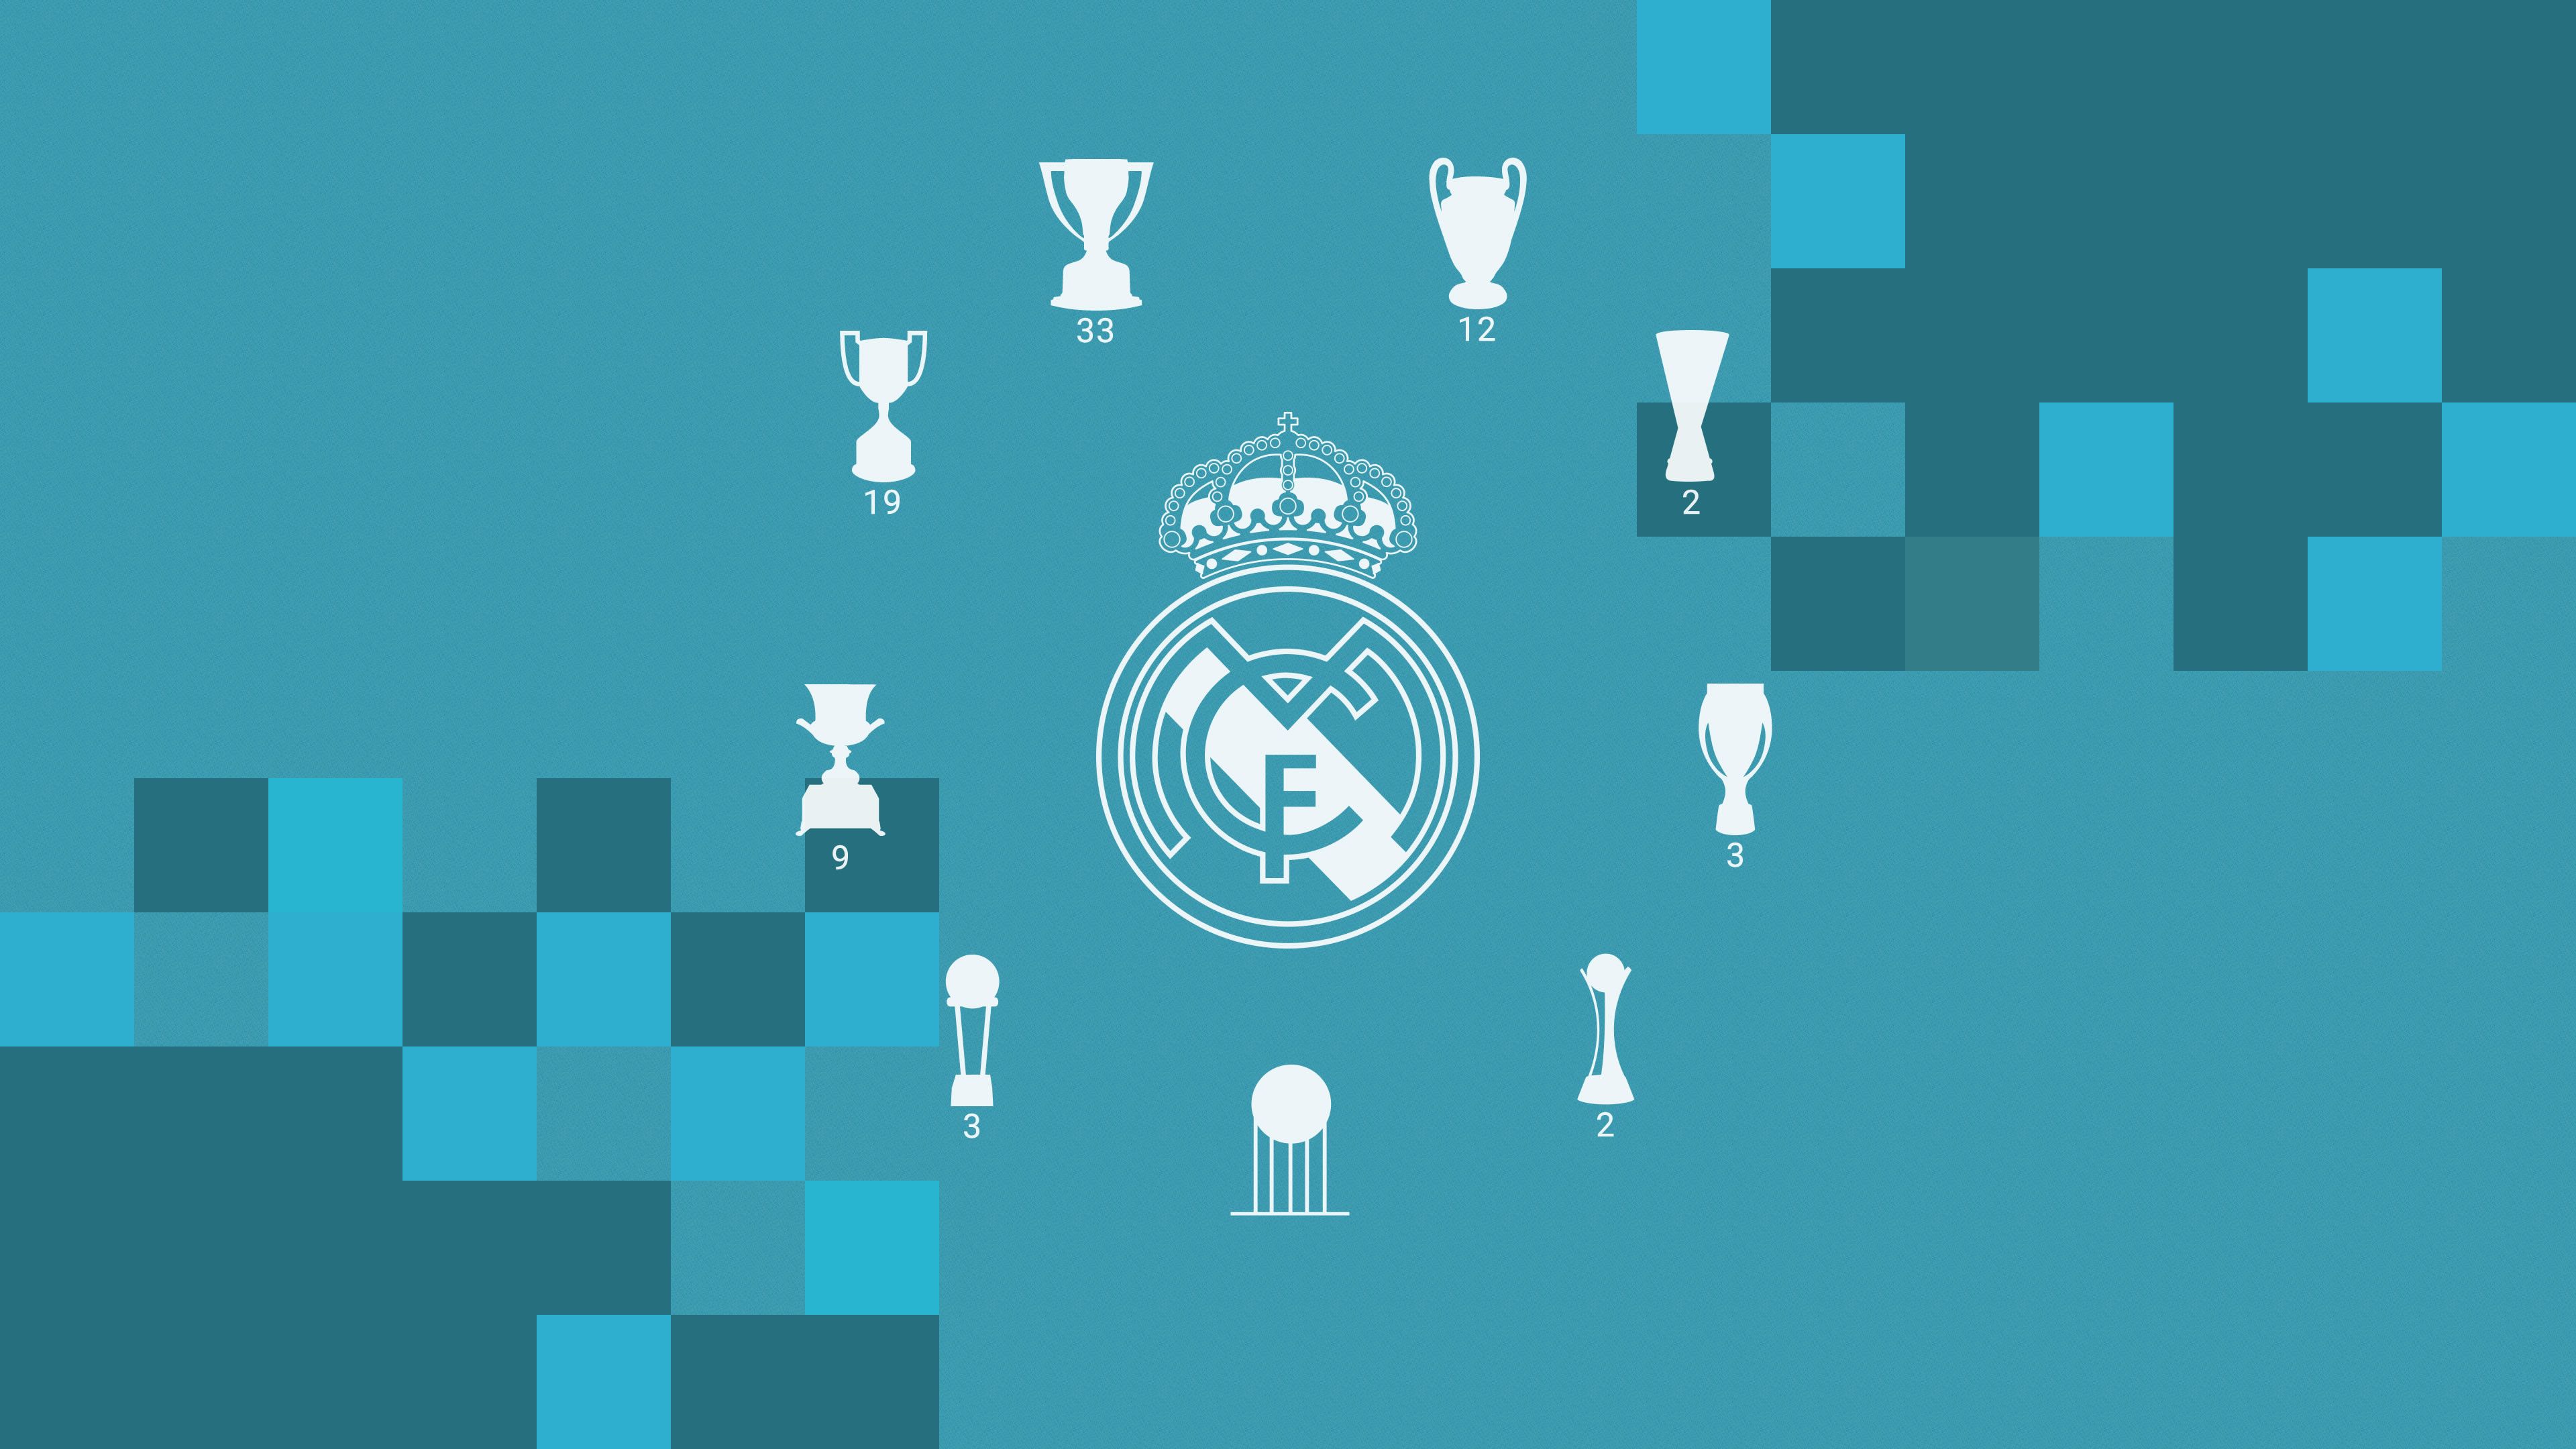 Năm 2018 đã trở thành một năm đặc biệt đối với Real Madrid, với sự thăng hoa của đội bóng trong các giải đấu lớn. Giờ đây bạn có thể sở hữu những hình nền Real Madrid mới nhất của chúng tôi, làm nổi bật tình yêu của bạn dành cho đội bóng thủ đô Tây Ban Nha.